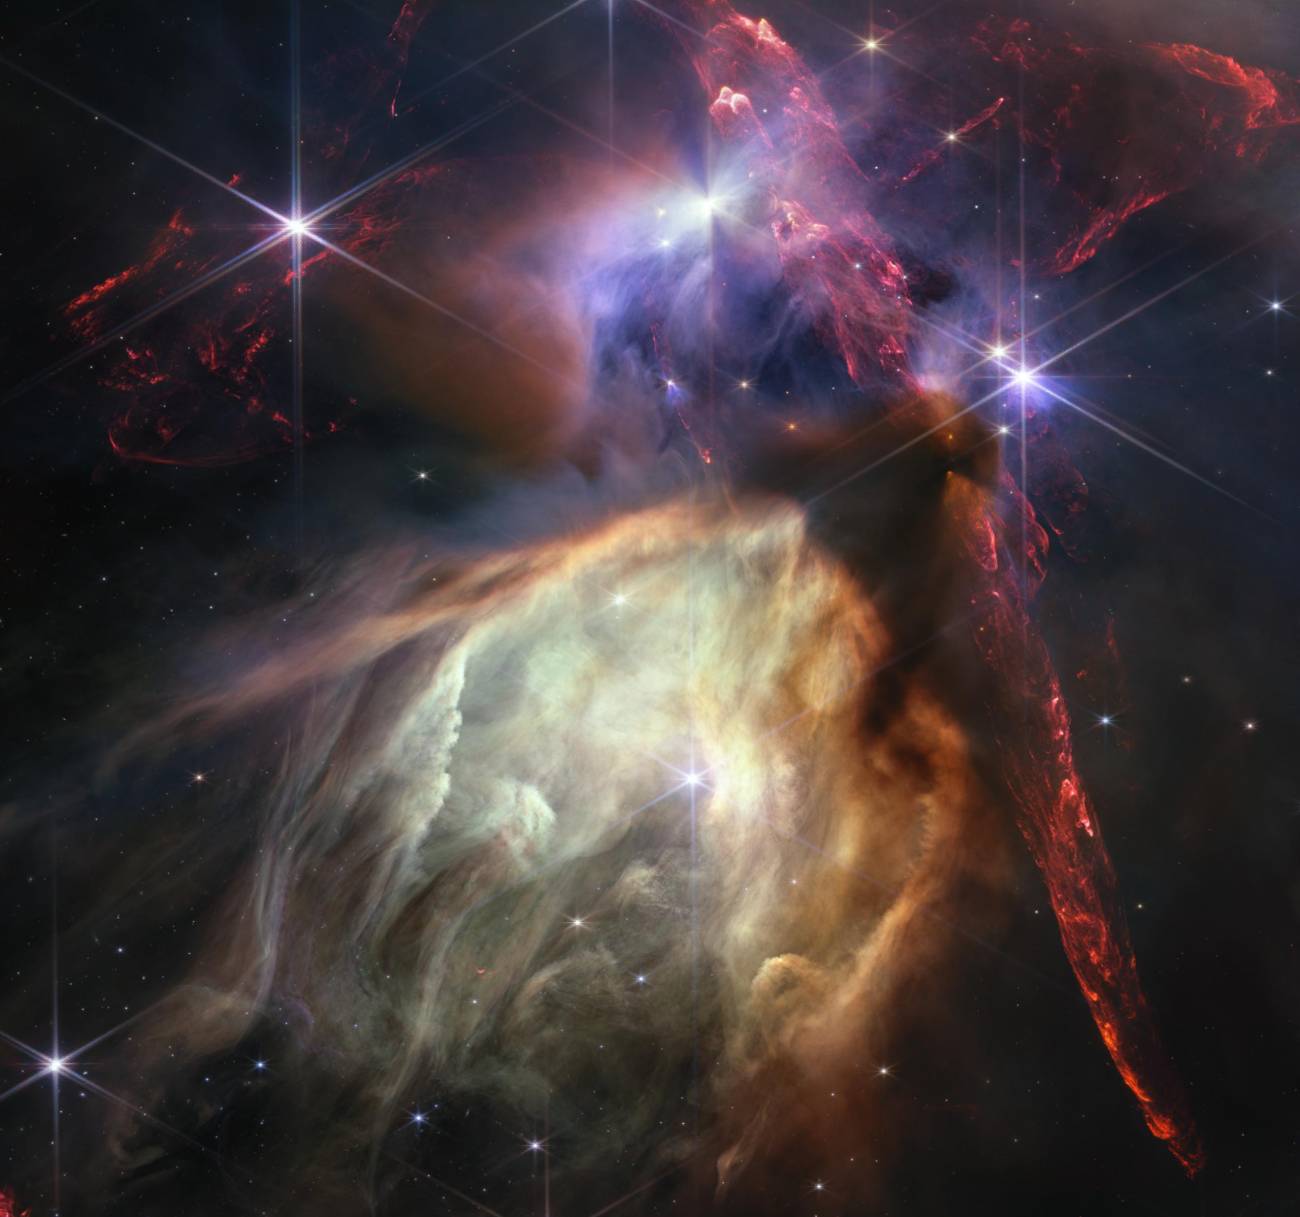 Complejo de nubes Rho Ophiuchi, la región de formación estelar más cercana a la Tierra captada por el Webb